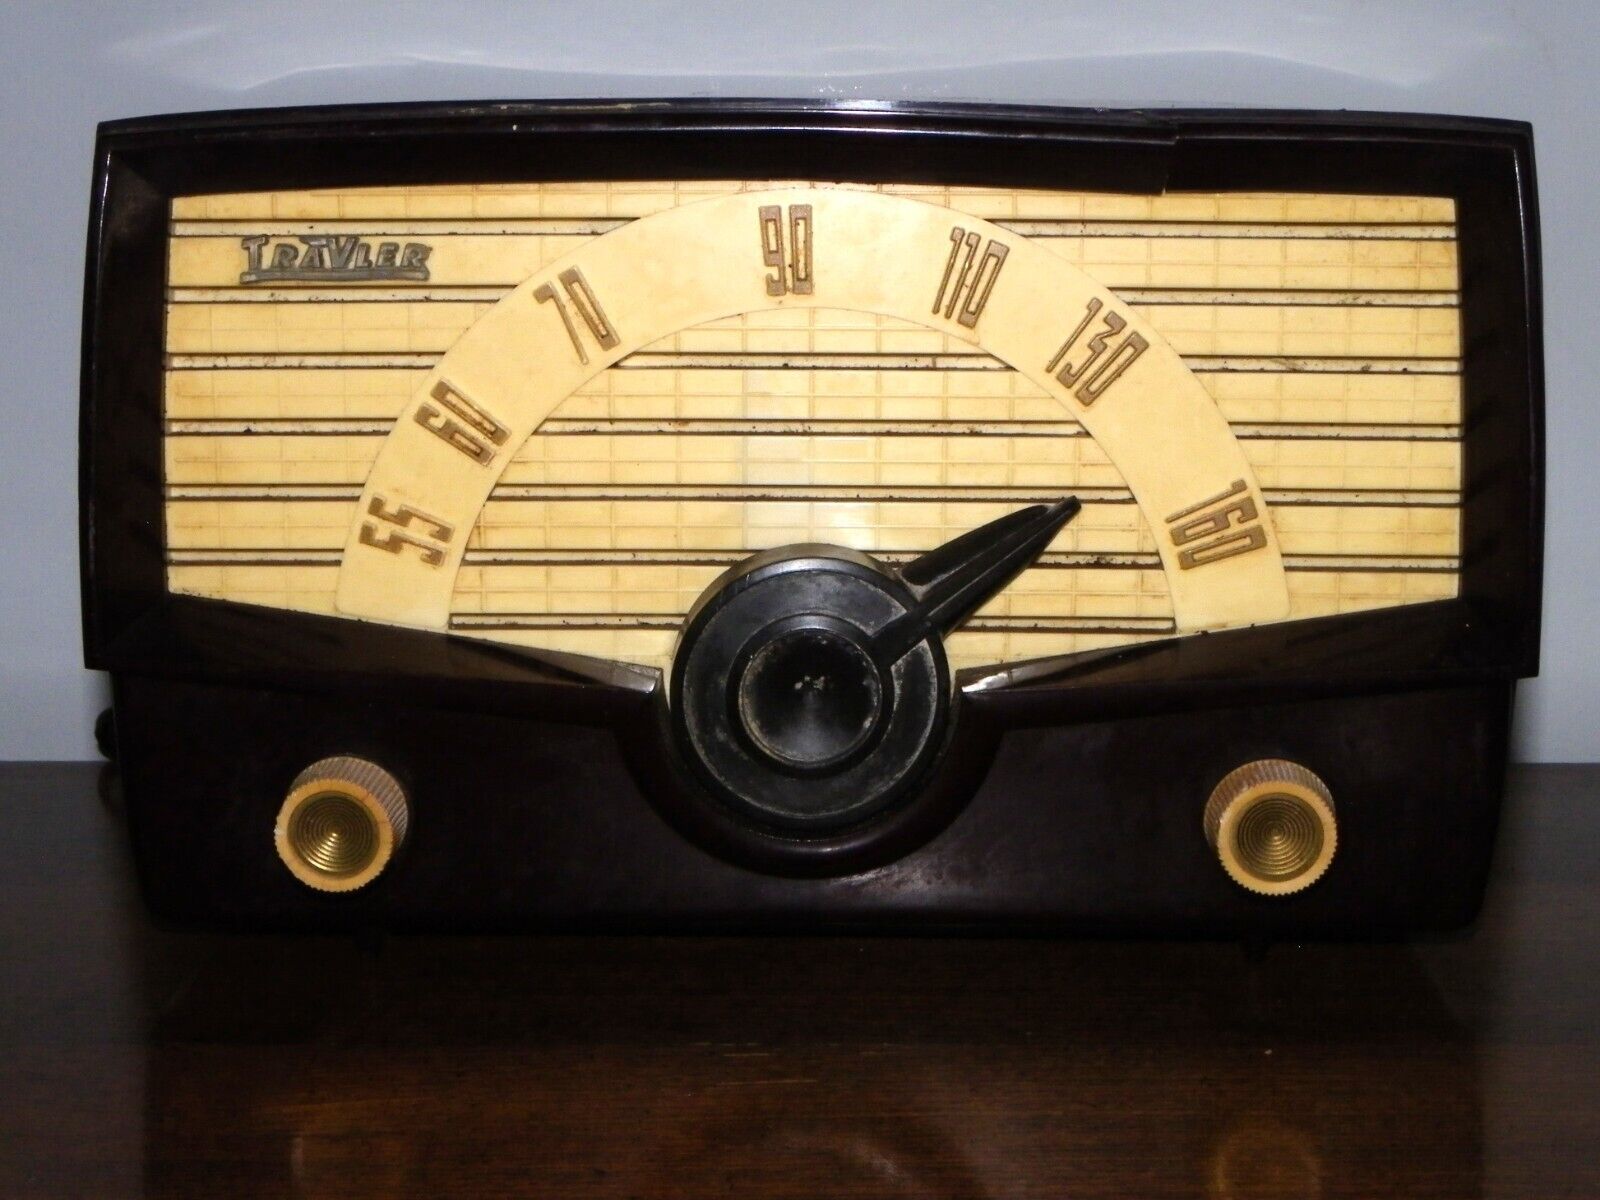 Vtg Mid Century Bakelite TRAVLER Table Top Tube Radio Model 66-38 Made In USA